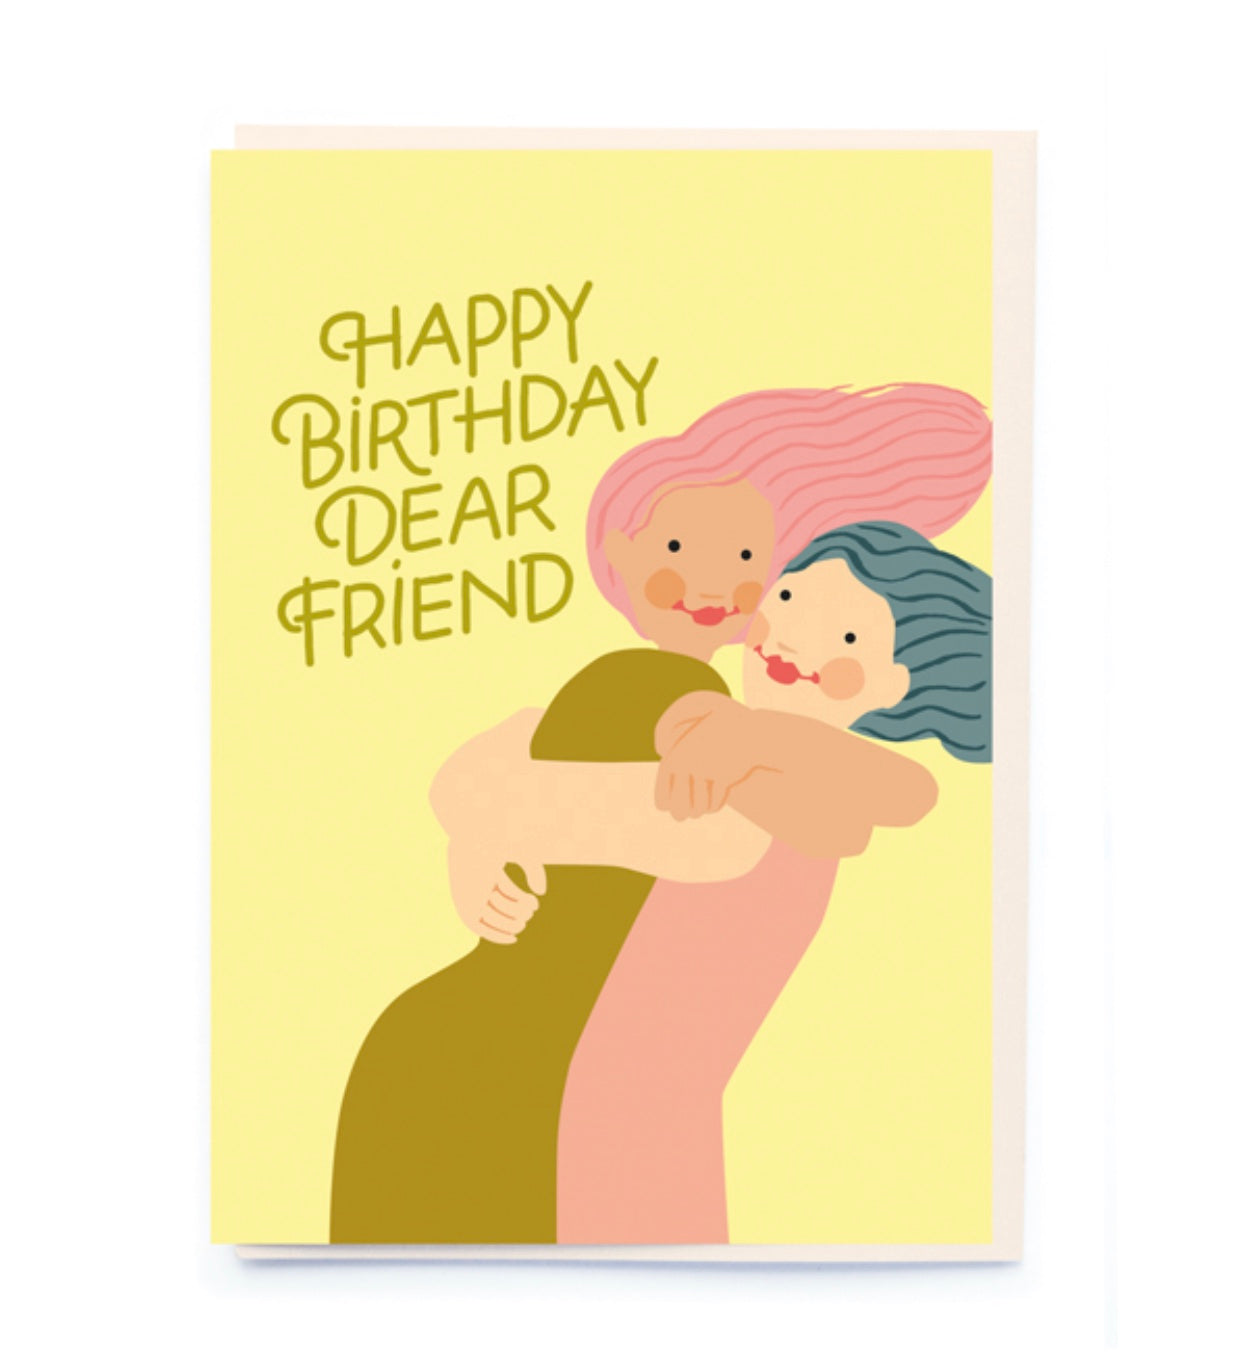 HAPPY BIRTHDAY DEAR FRIEND | CARD BY NOI